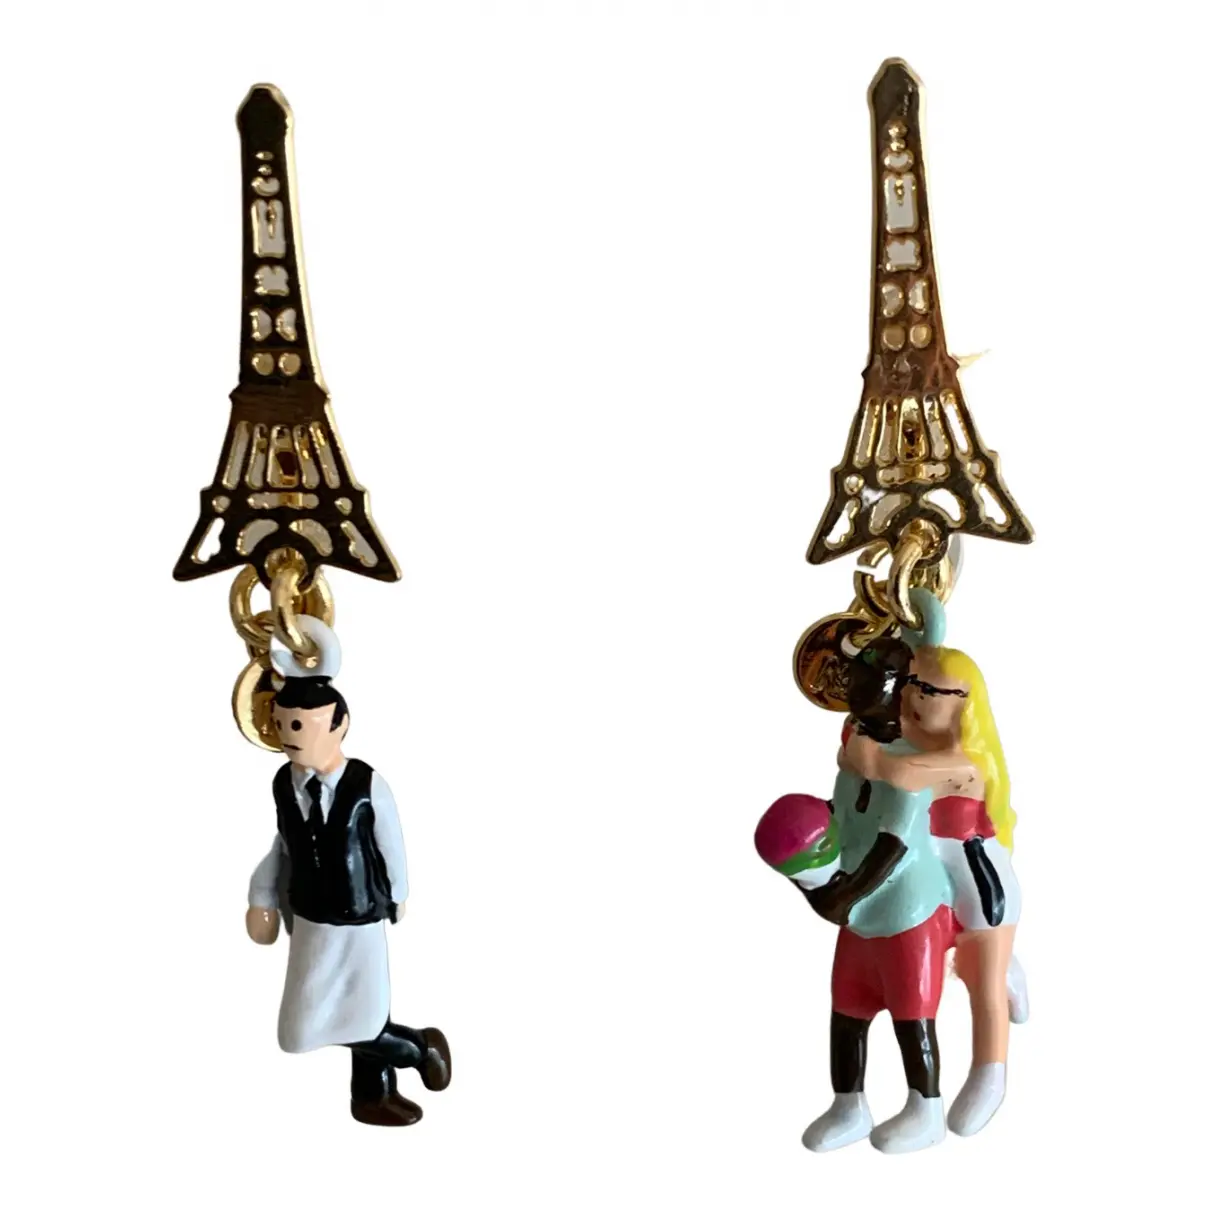 Earrings Les Néréides